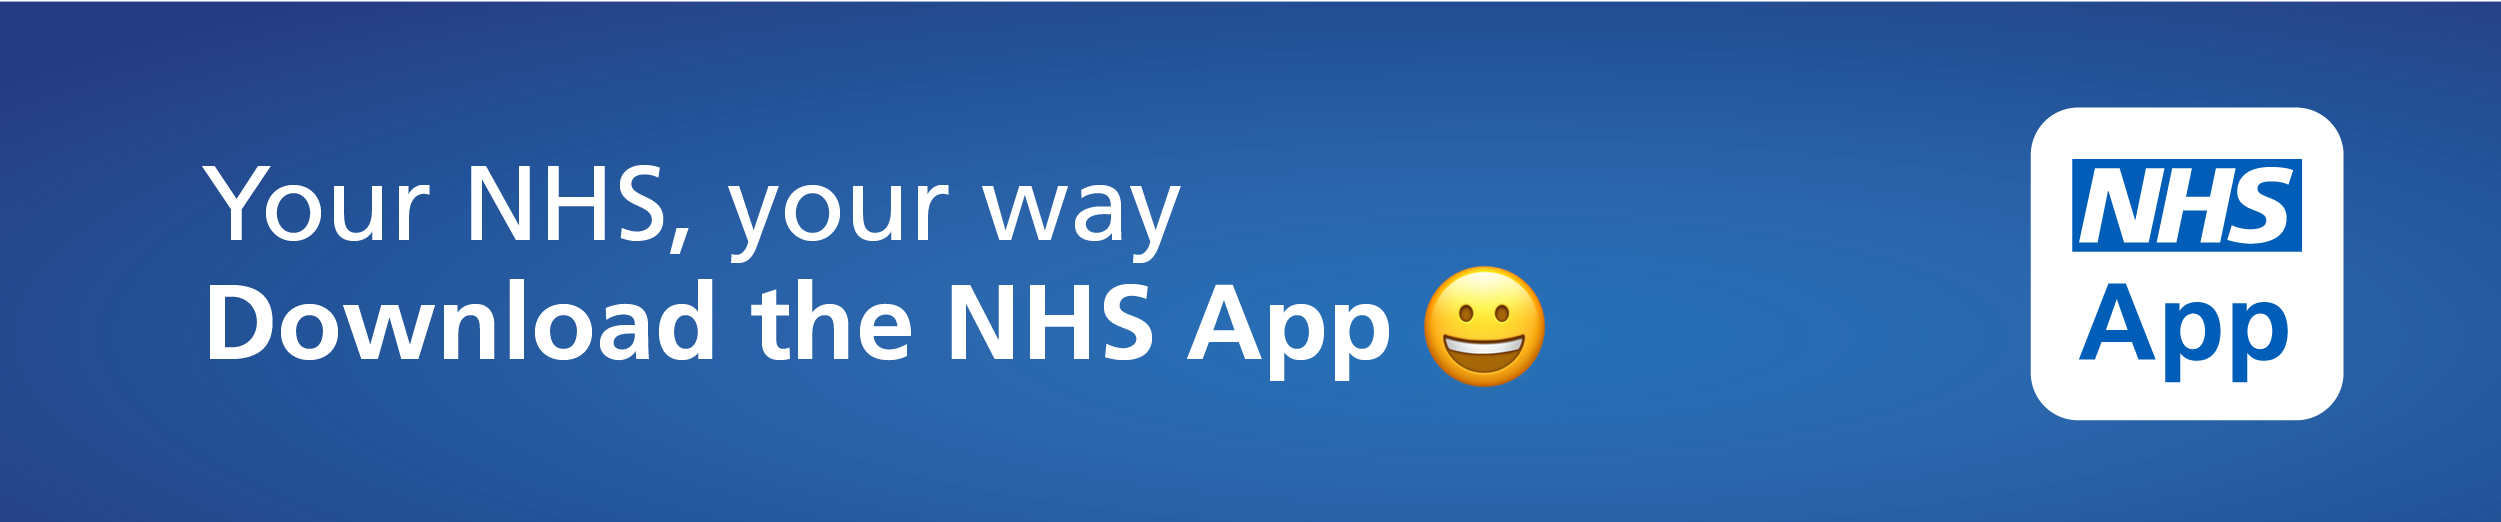 The NHS App